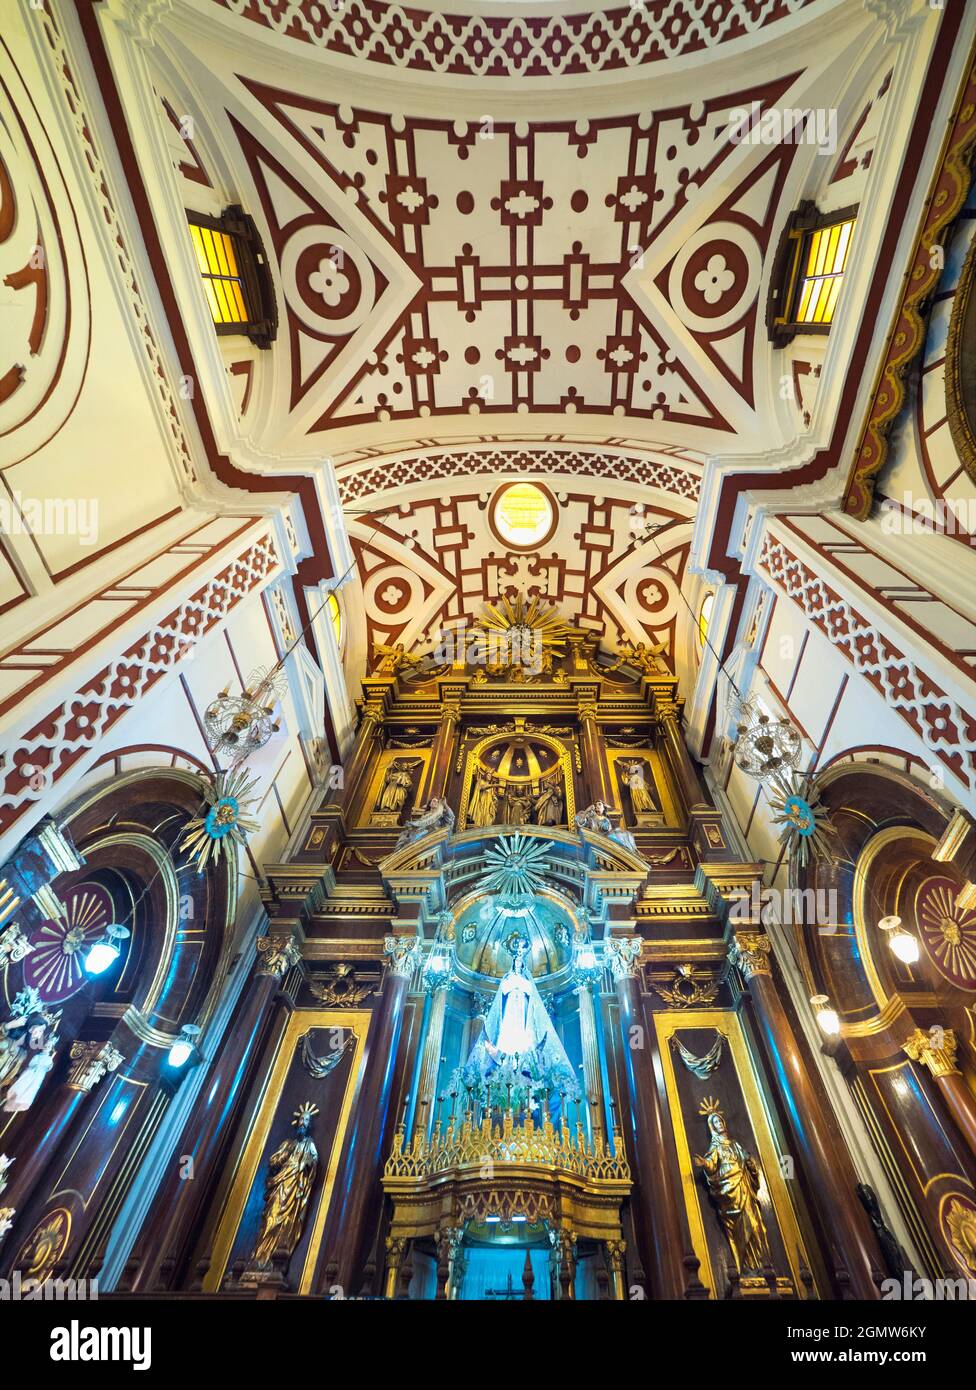 Lima, Pérou - 10 mai 2018 la basilique et le couvent de Saint François est un monument historique de Lima, Pérou. Construit en 1673, il a survécu jusqu'à présent à plusieurs ea Banque D'Images